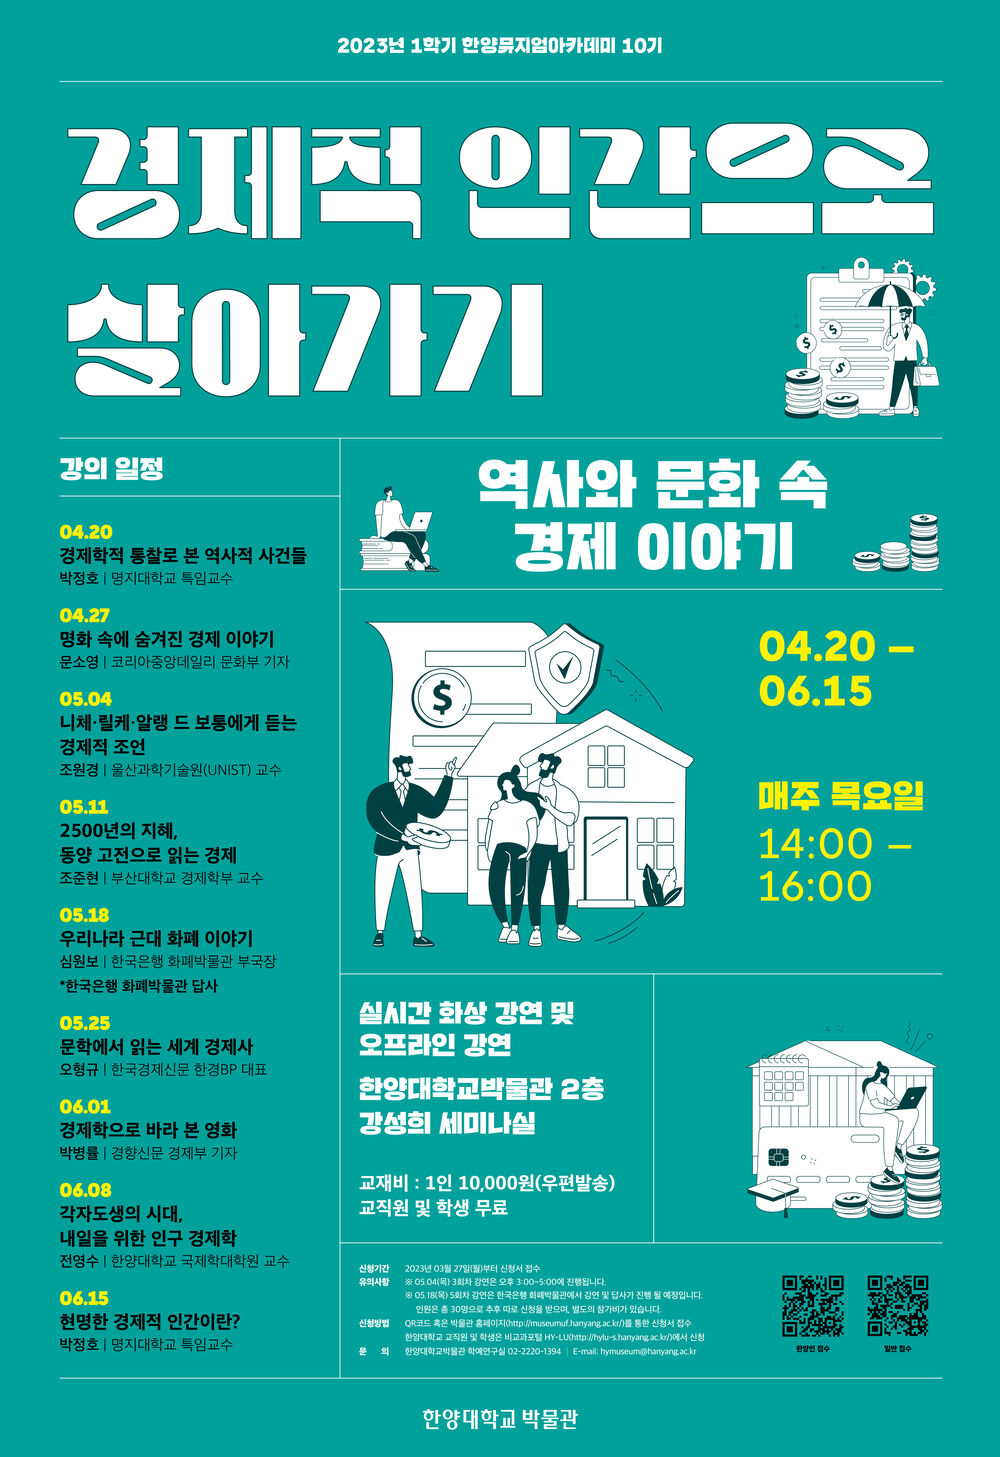 00 한양뮤지엄아카데미 10기 포스터-최종.jpg